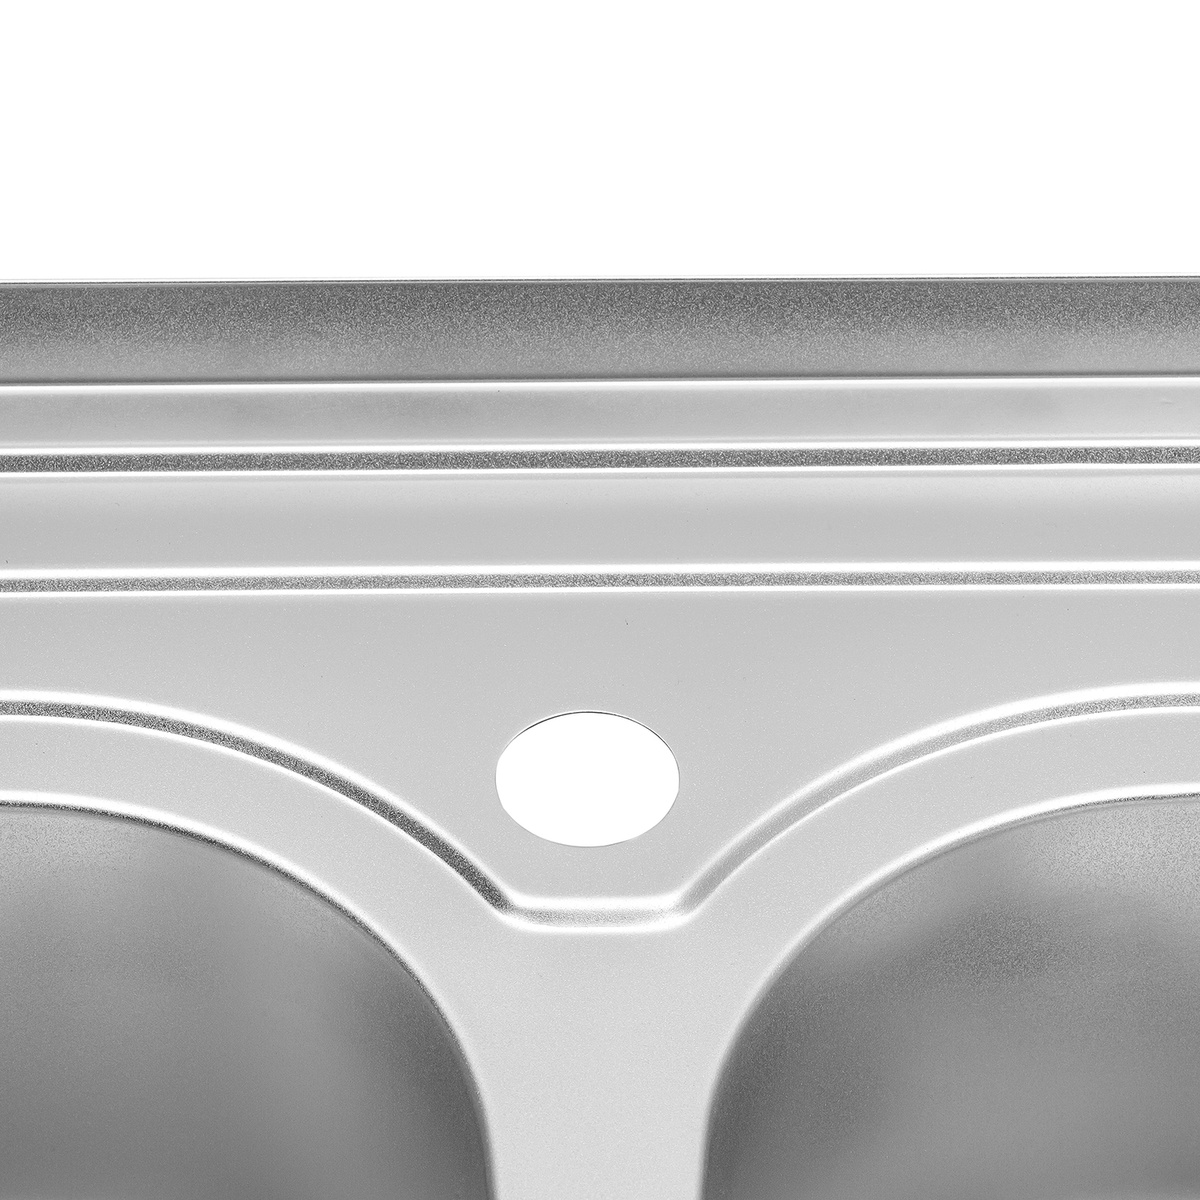 Мийка для кухні із нержавіючої сталі прямокутна накладна KRONER KRP 800x600x180мм матова 0.8мм на дві чаші із сифоном CV022827